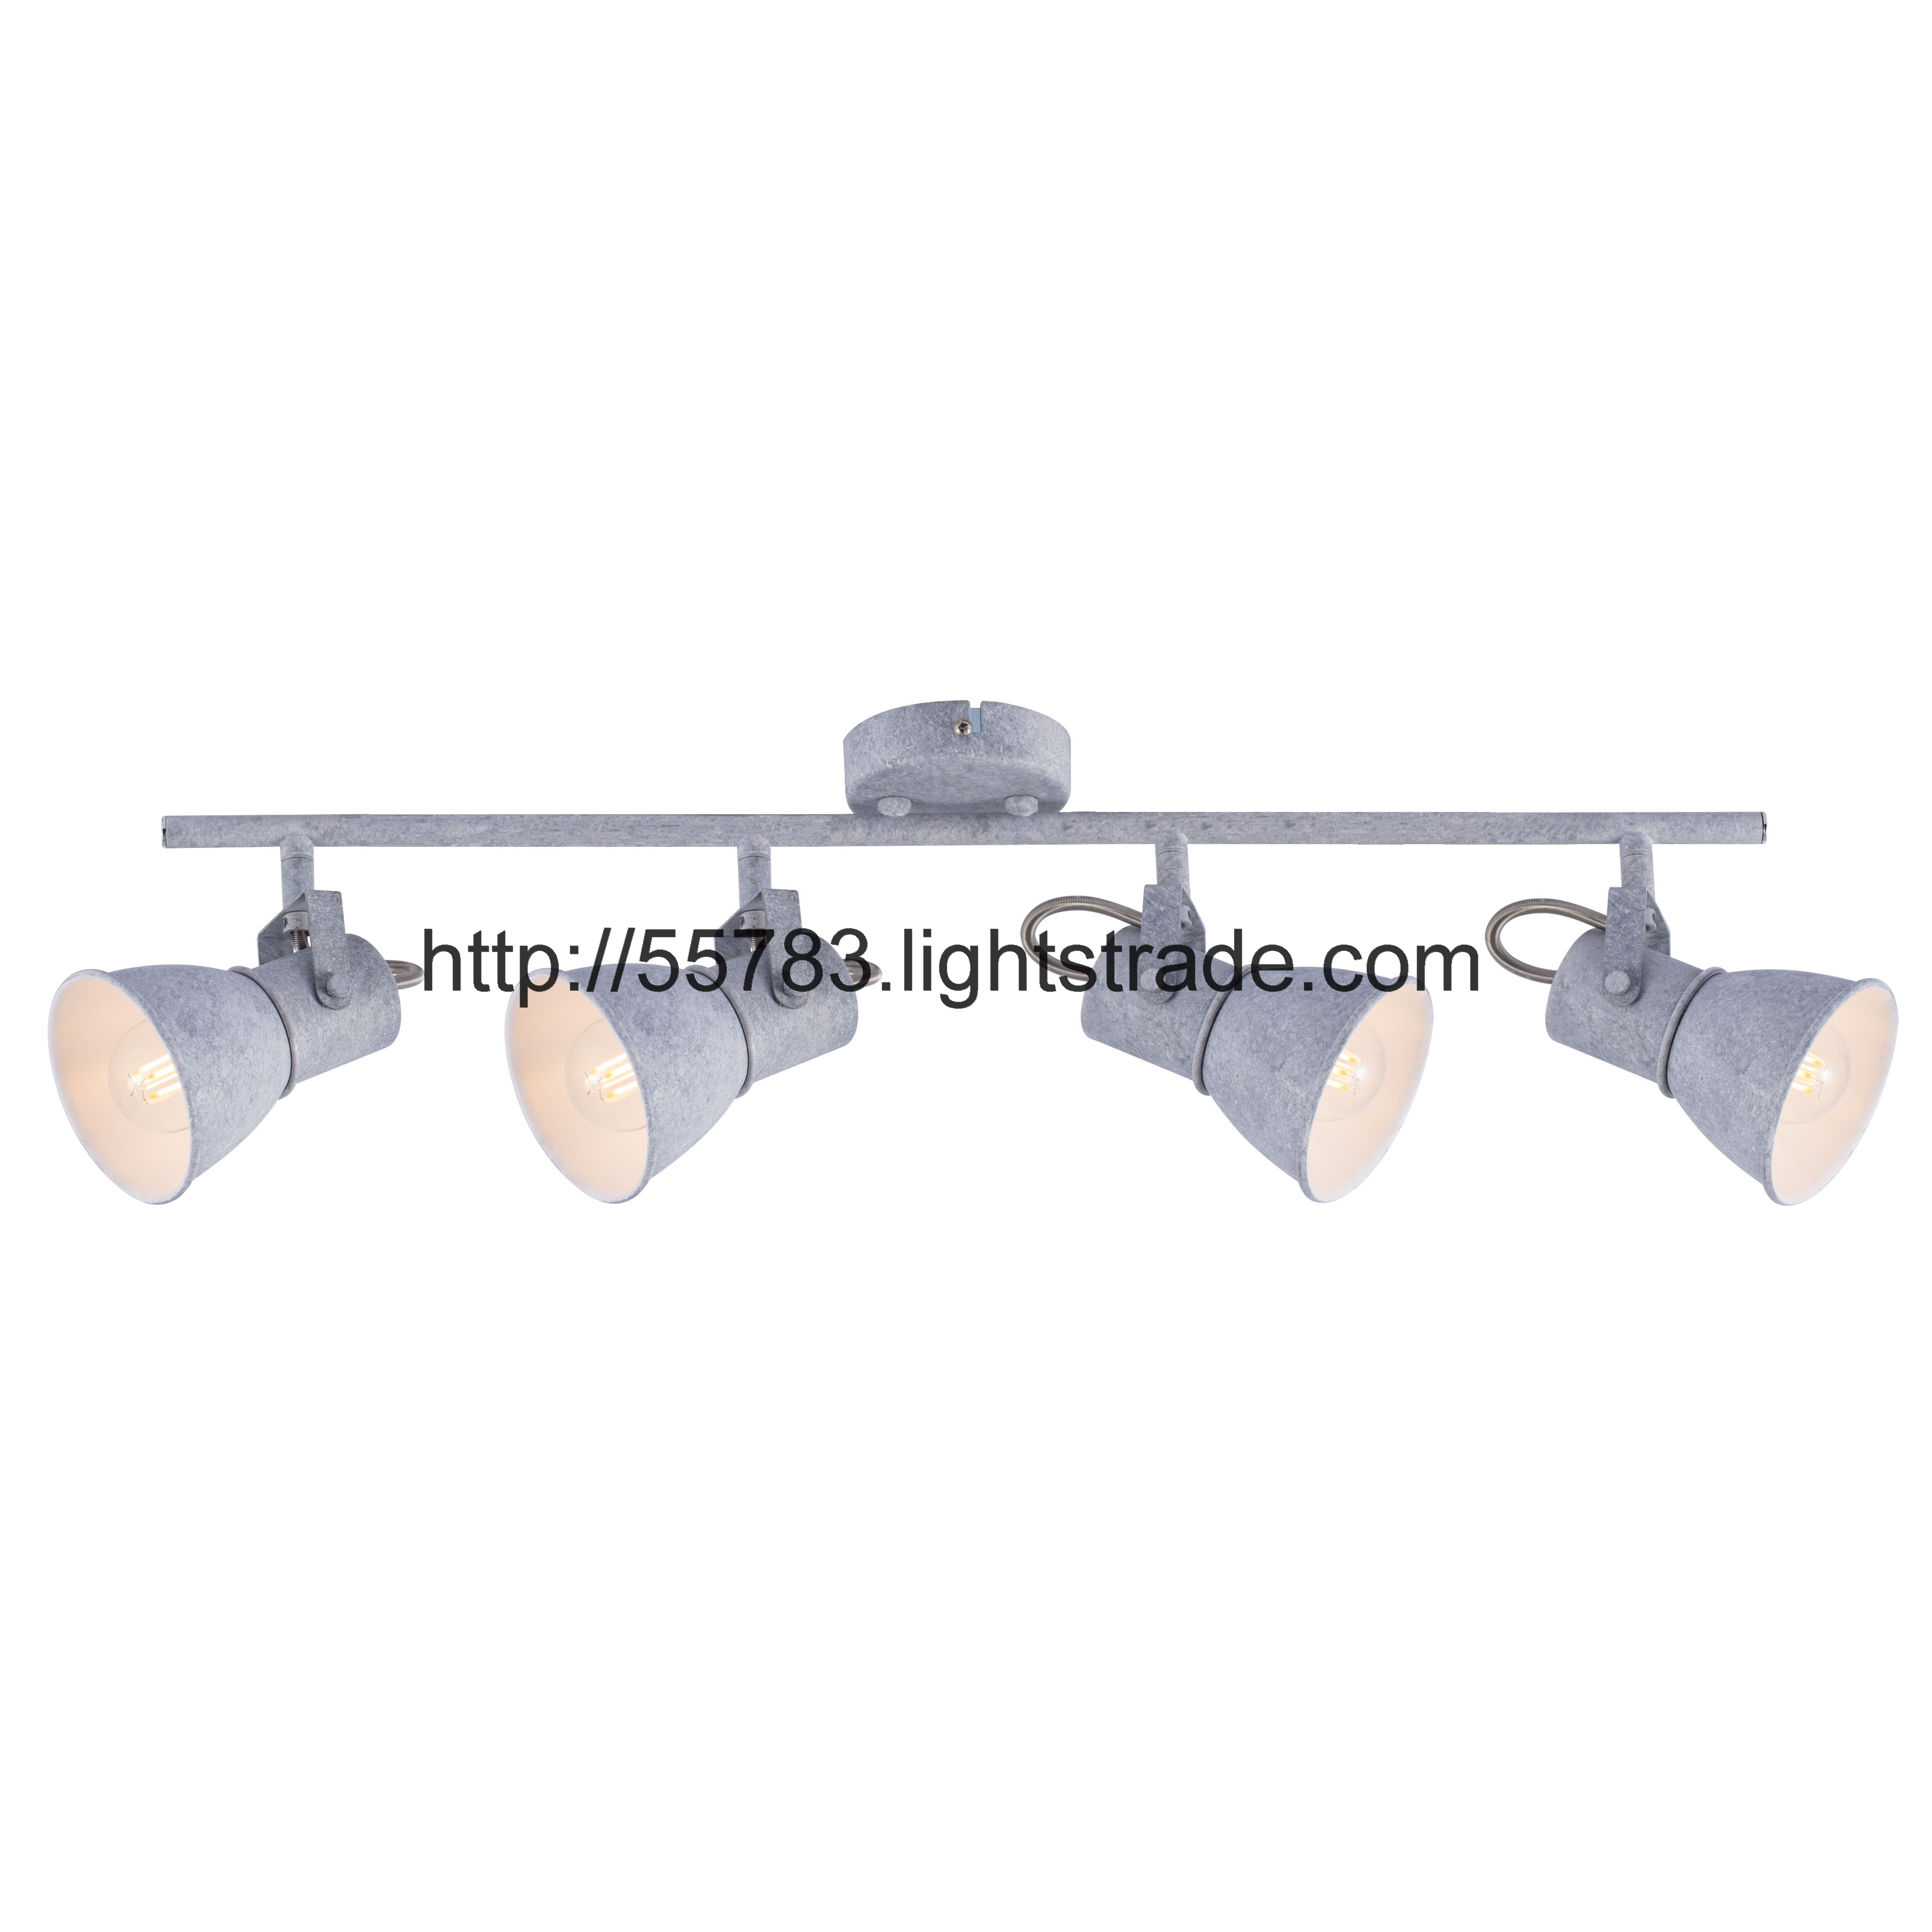 SPOT LAMP E14 GREY COLOR ROUAD BASE HS220810 SERIES